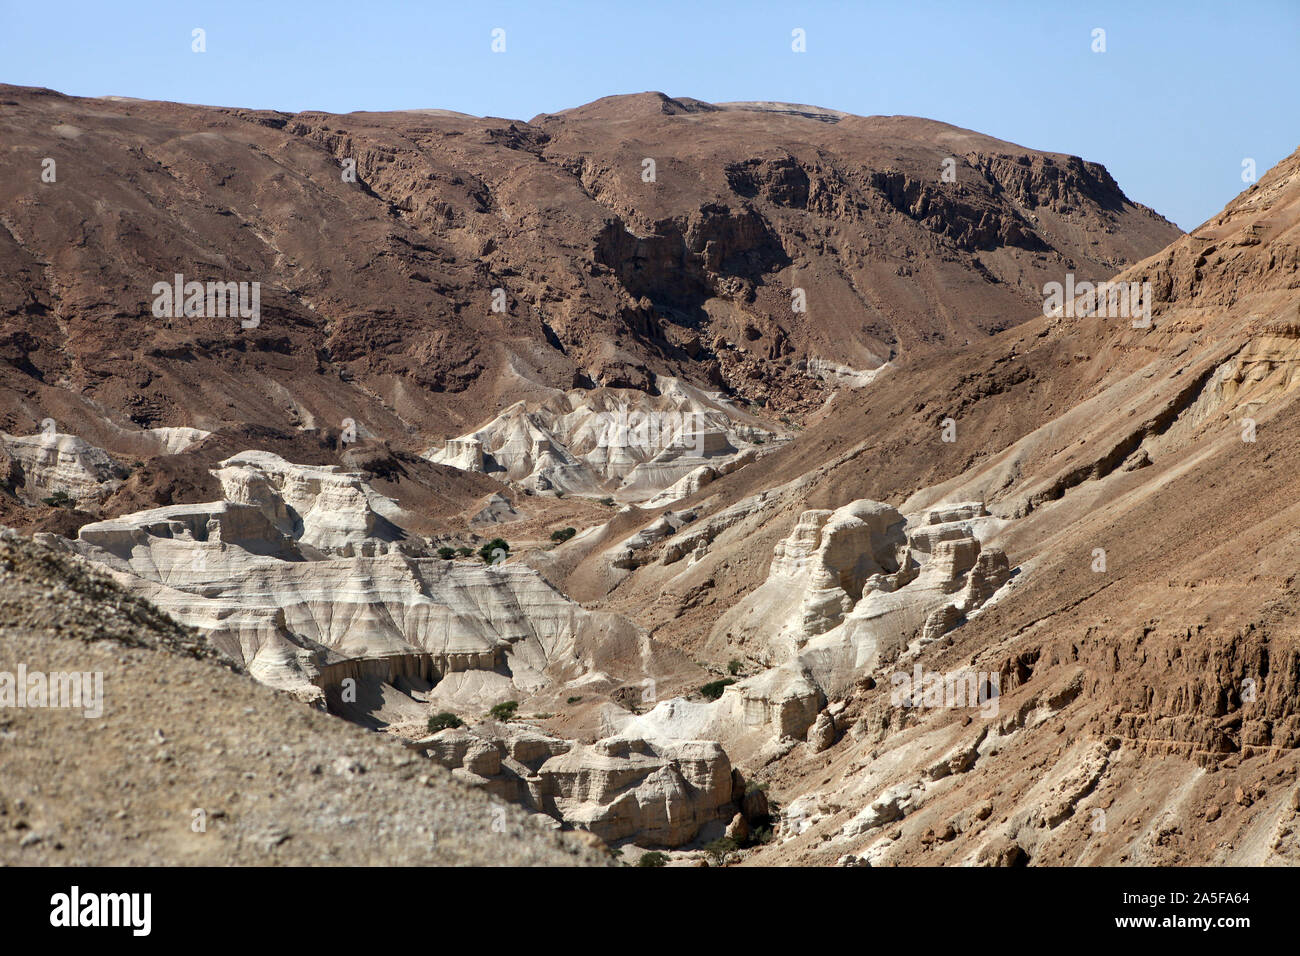 Structure des montagnes de sable près de la mer Morte, où les rouleaux de la Mer Morte ont été trouvés, Israël Banque D'Images